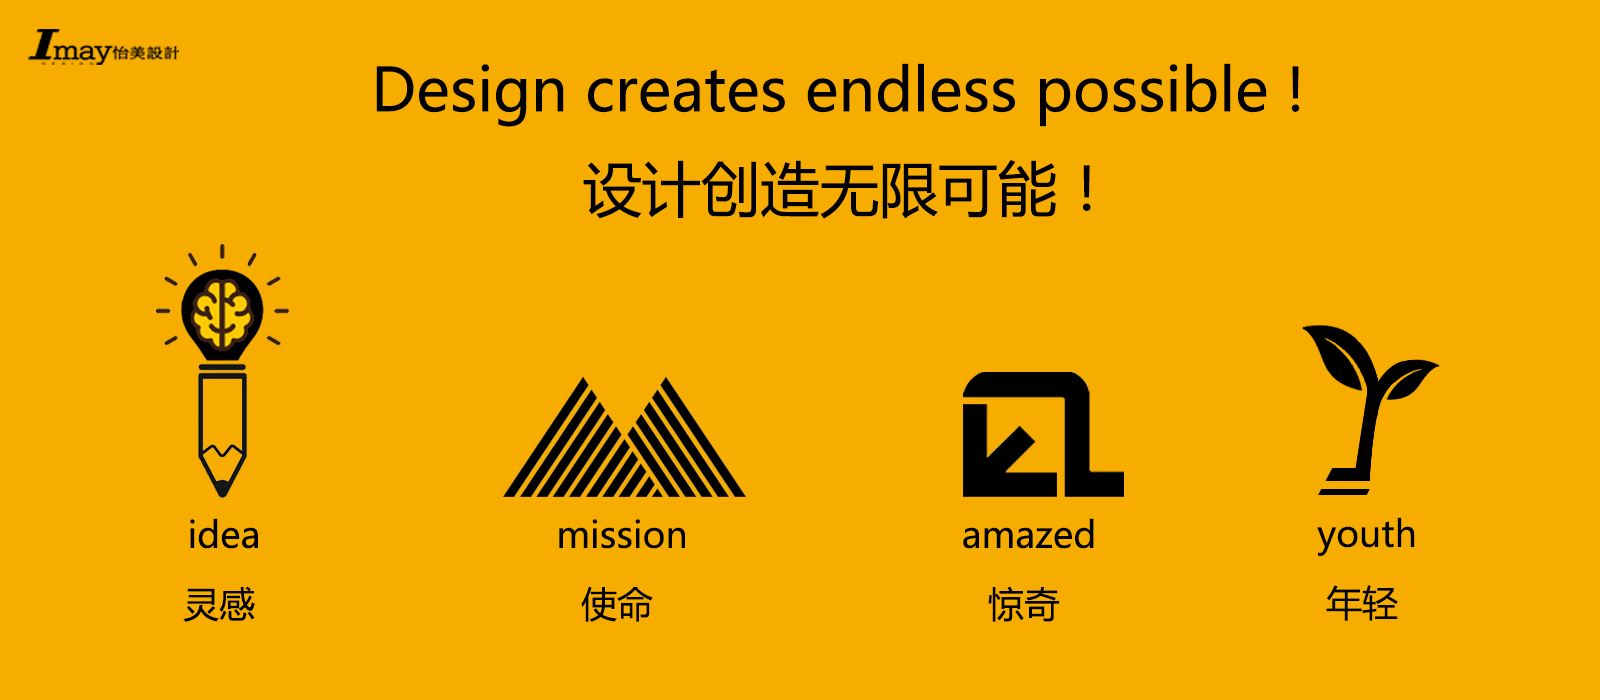 深圳外观设计产品设计公司;怡美工业设计